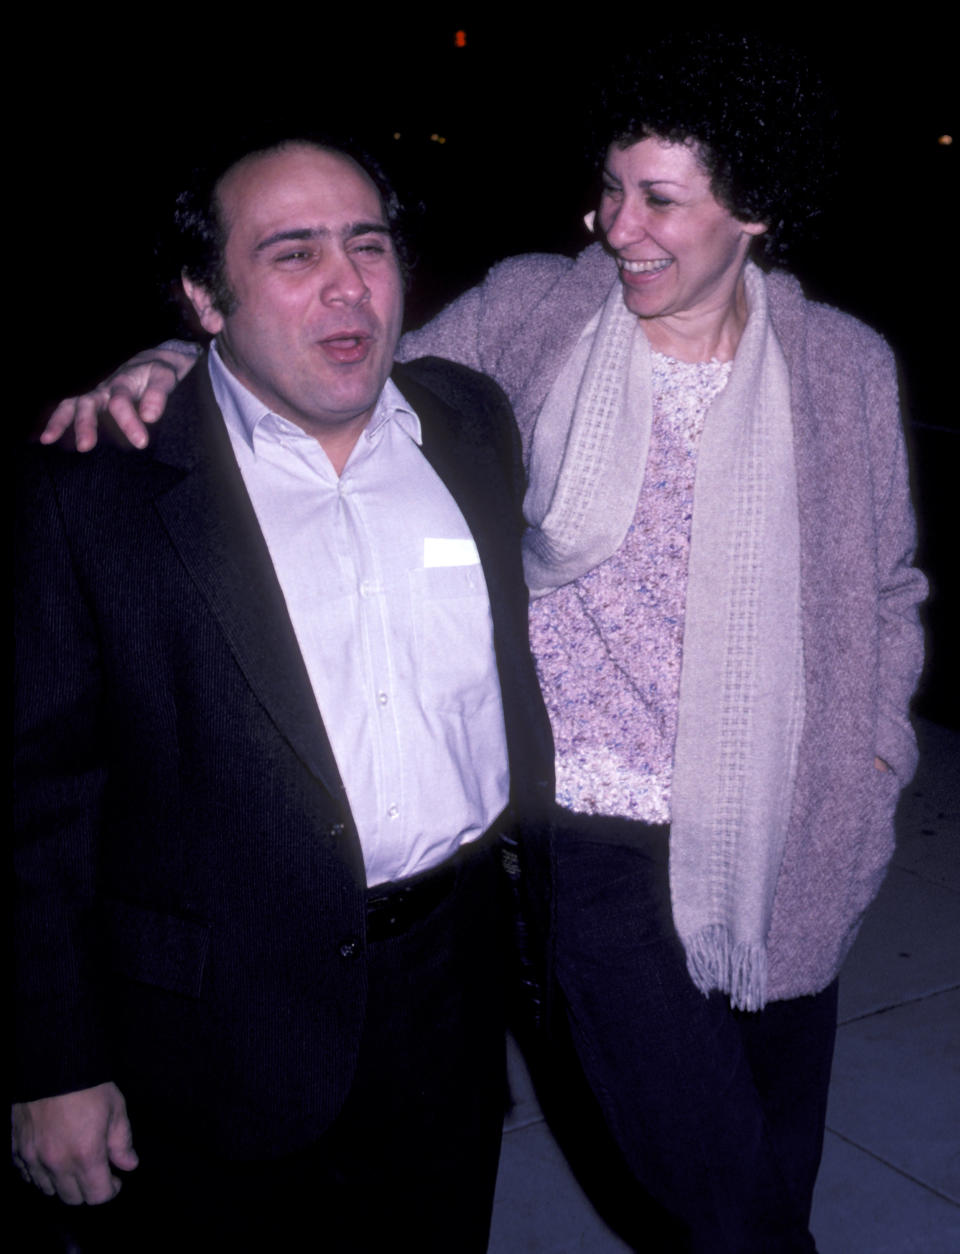 Danny DeVito & Rhea Perlman married in Jan. 1982.